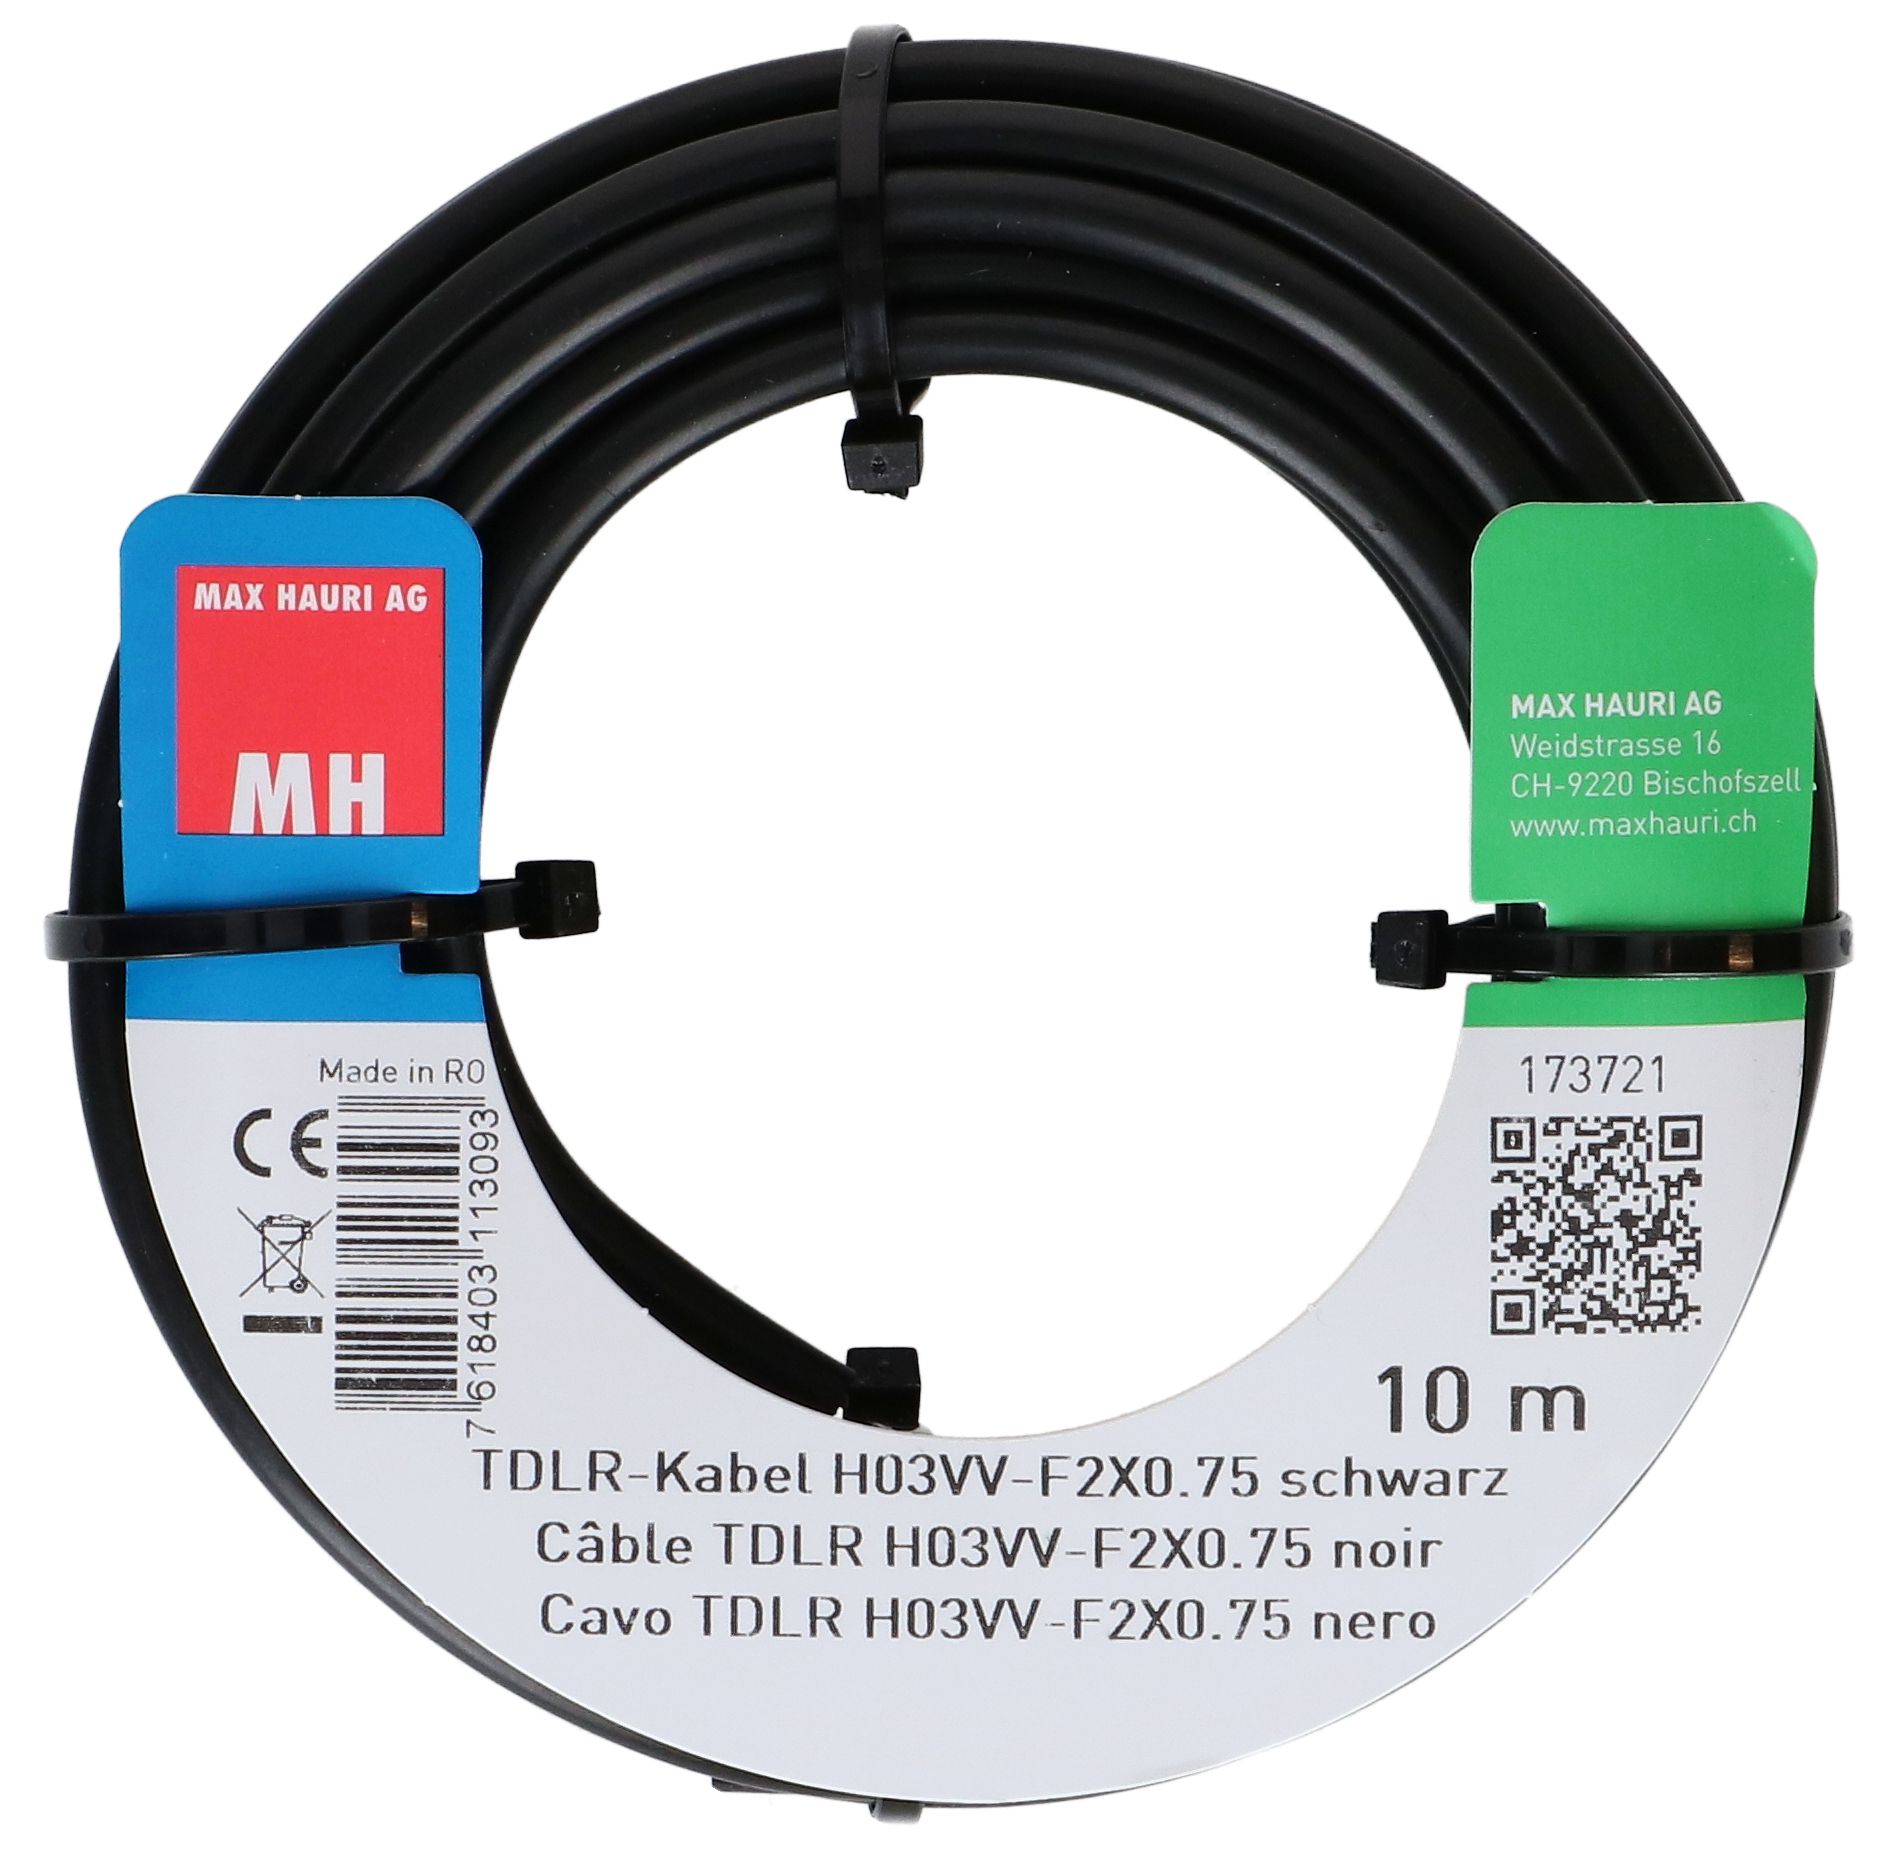 TDLR-Kabel H03VV-F2X0.75 10m schwarz